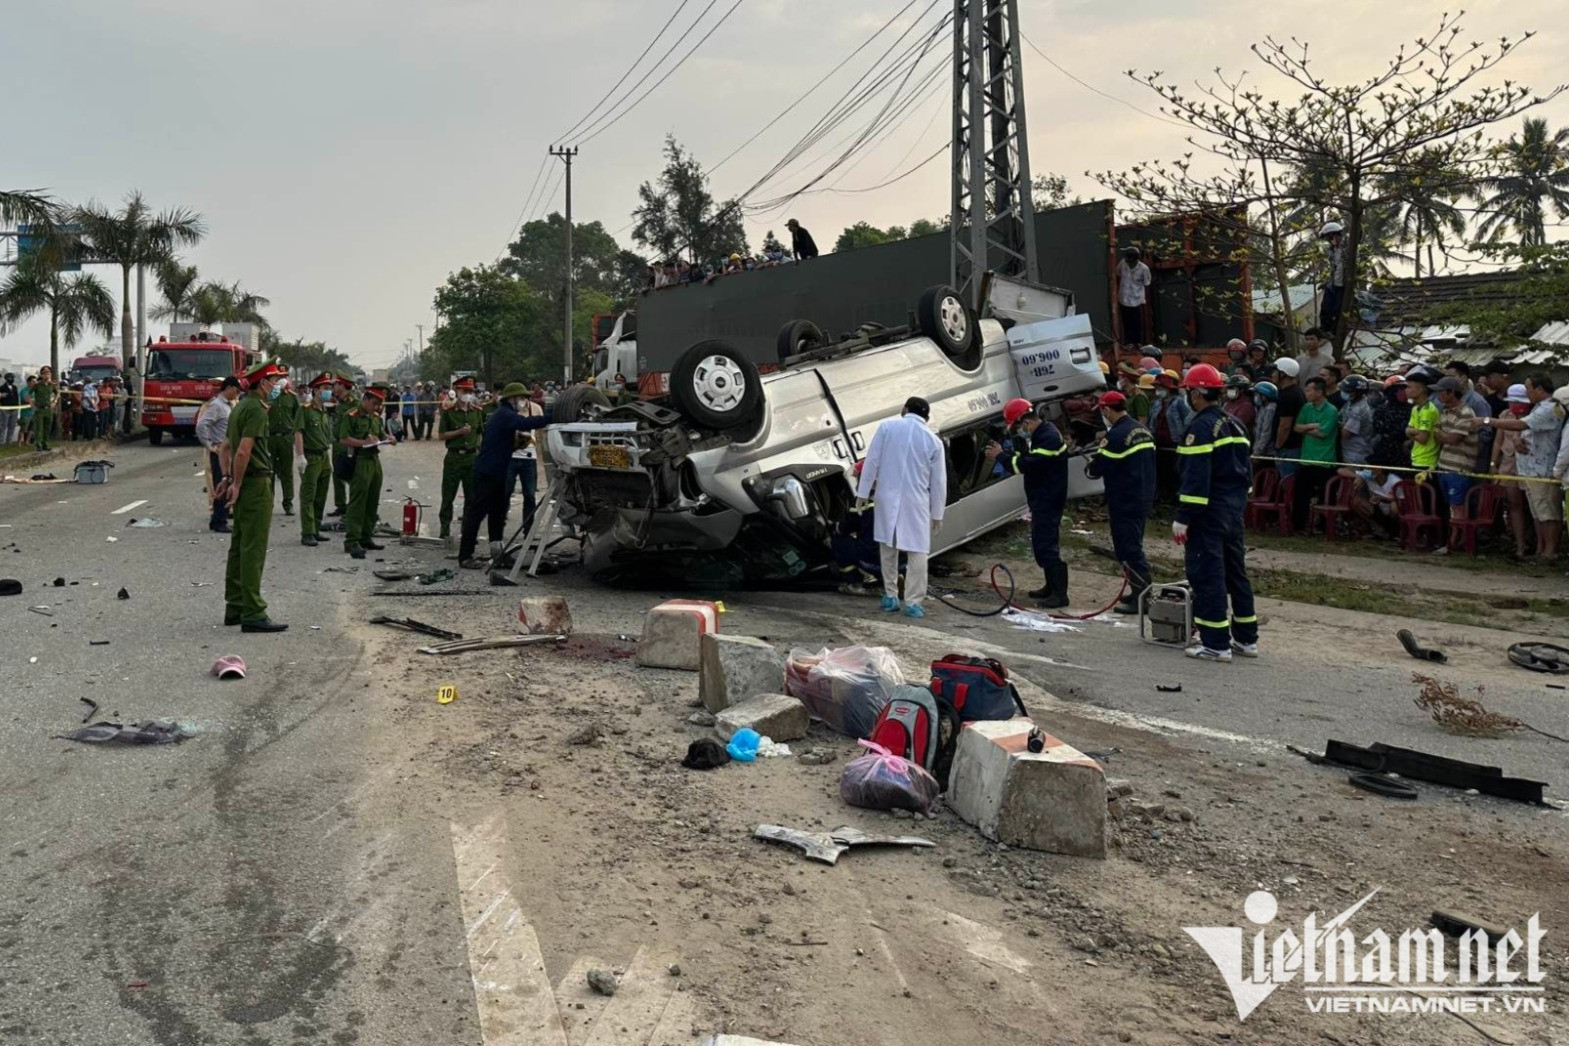 Nạn nhân thứ 10 tử vong trong vụ tai nạn giao thông ở Quảng Nam